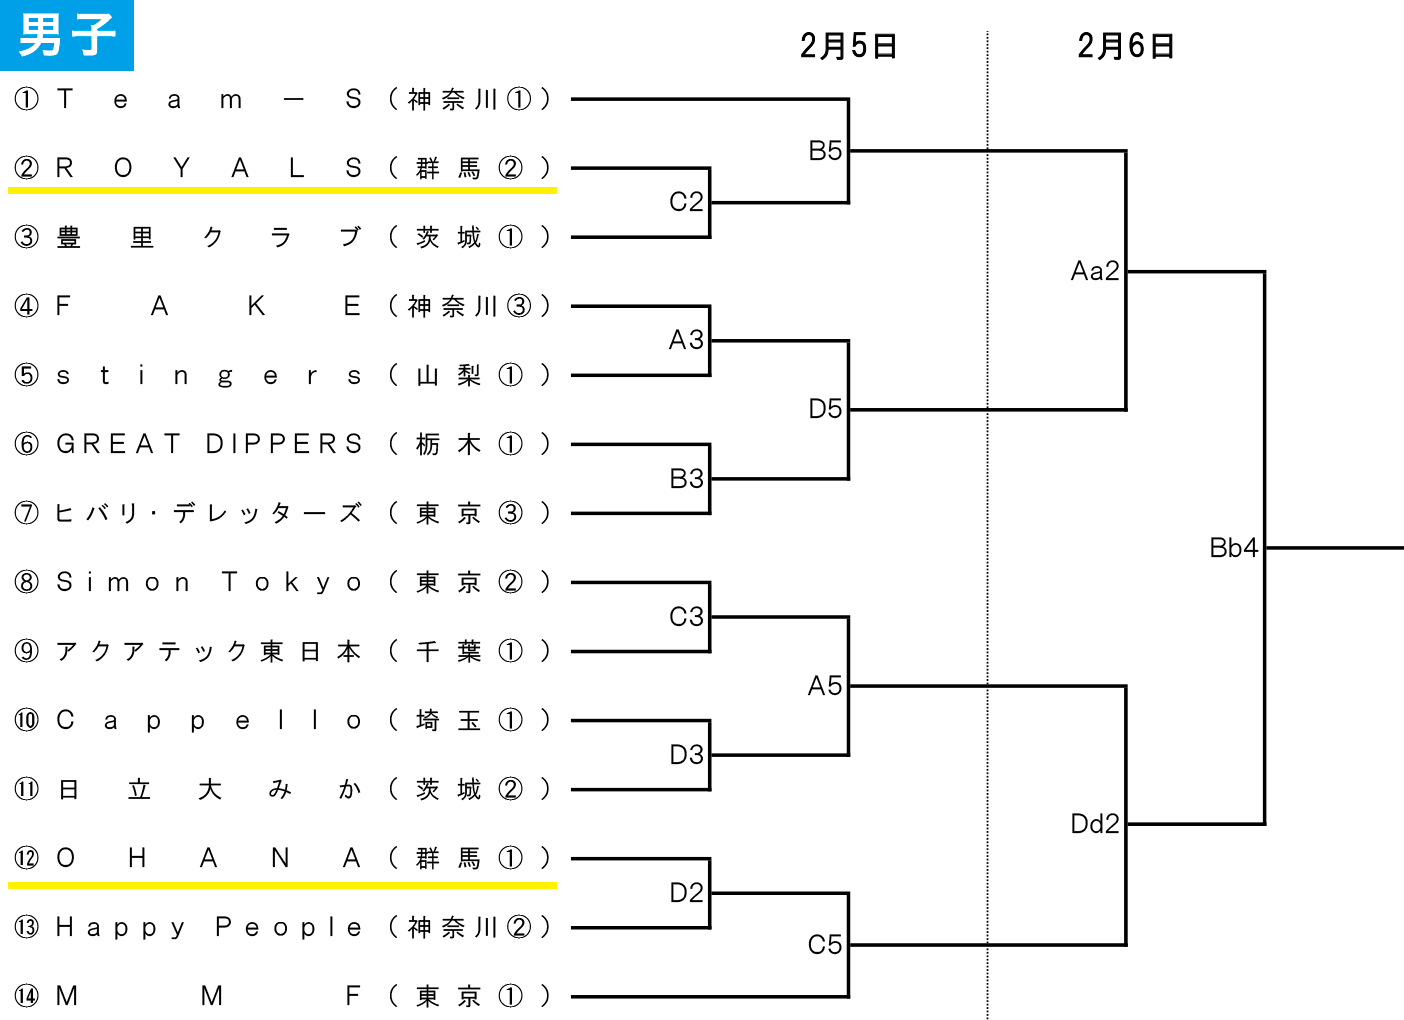 第4回 全日本社会人選手権大会 関東ブロック予選 - 男子 組み合わせ